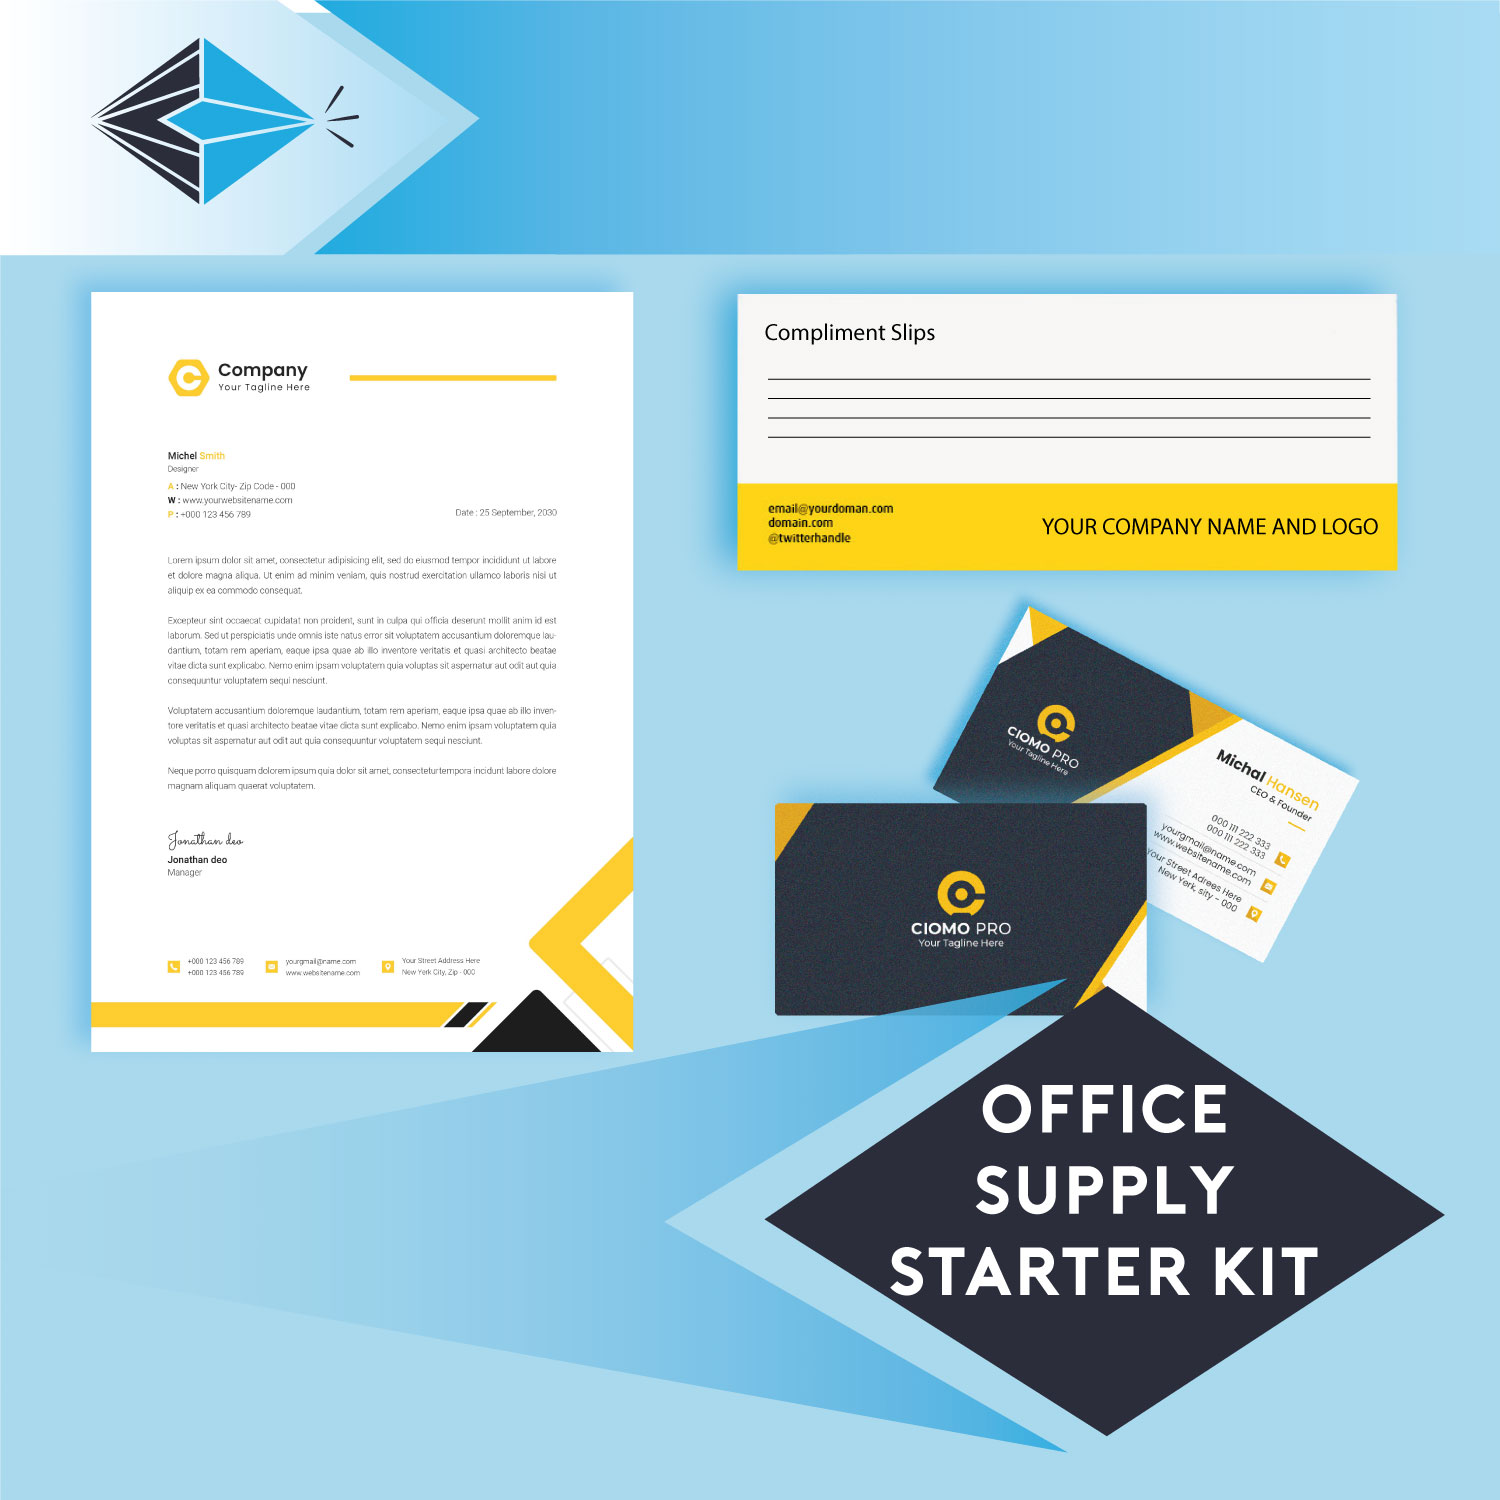 Office Supply Starter Kit Office Printing Kit Printing For Offices Starter Kit for Offices Stockport Manchester UK